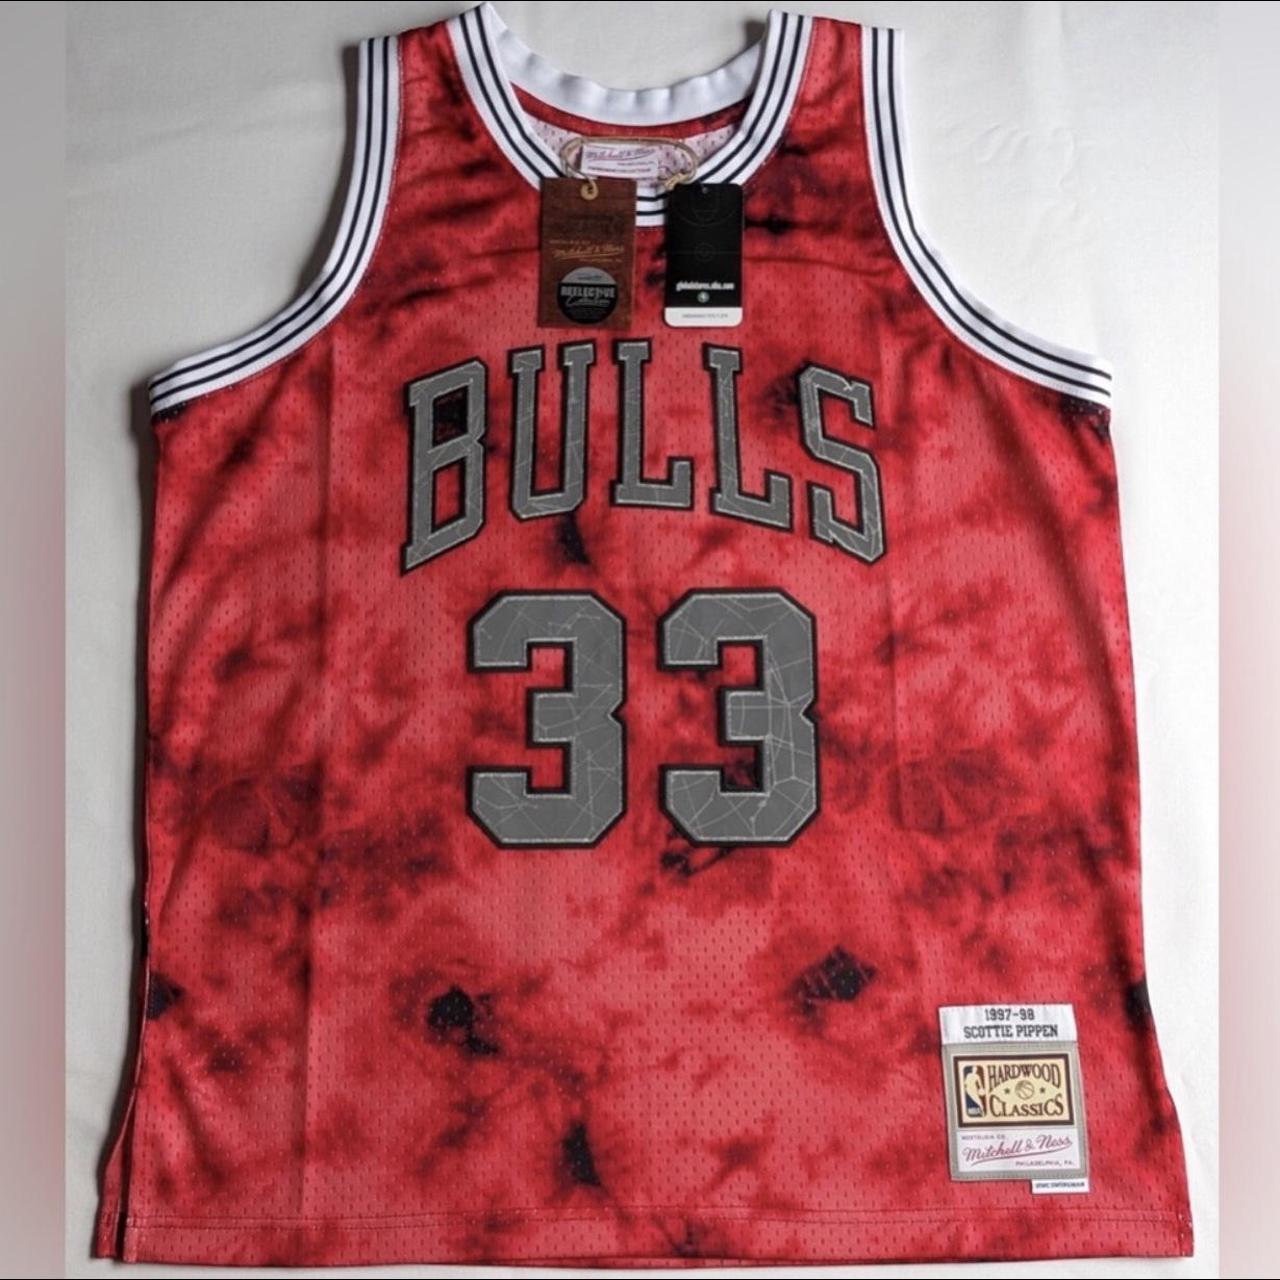 Scottie Pippen Chicago Bulls #33 Jersey player shirt